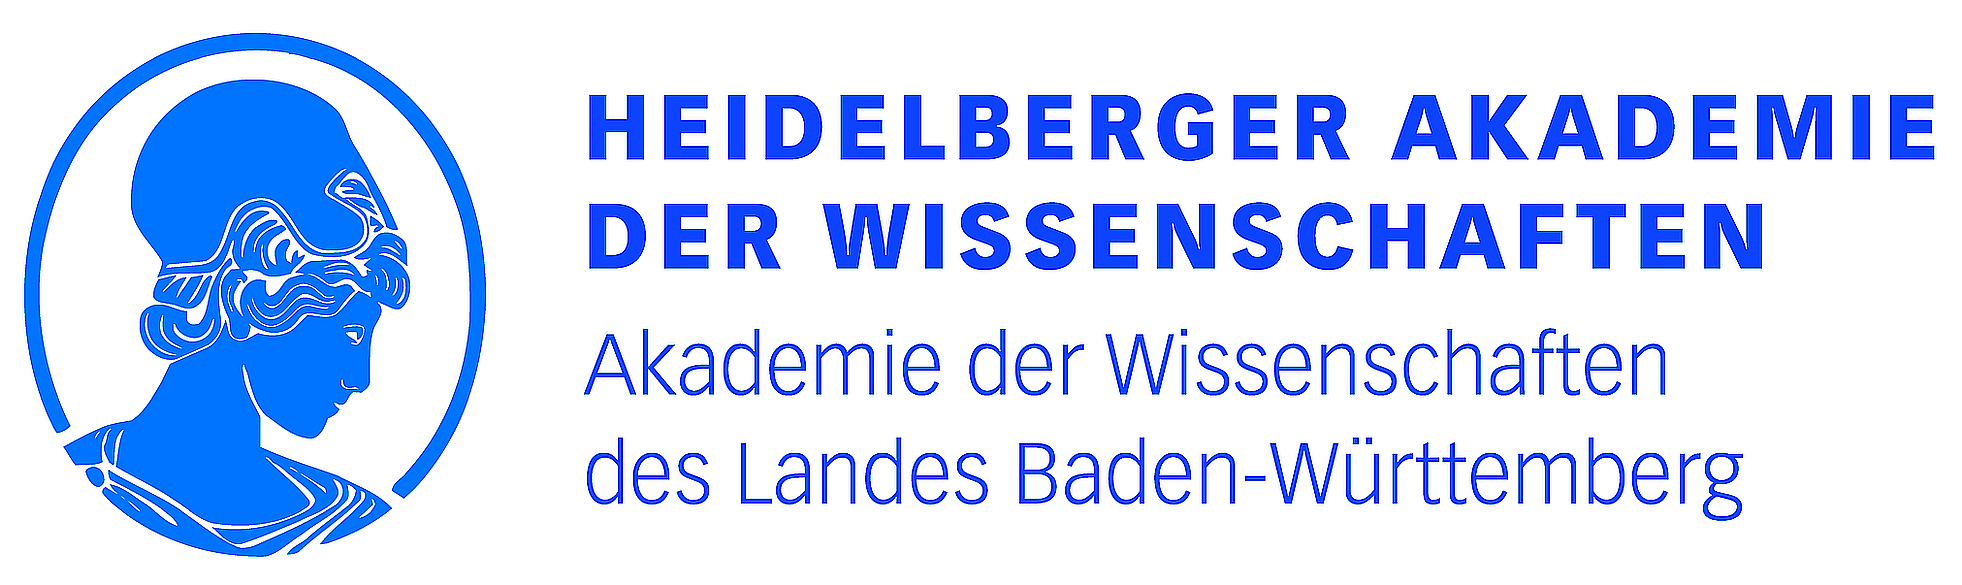 Logo: Heidelberger Akademie der Wissenschaften